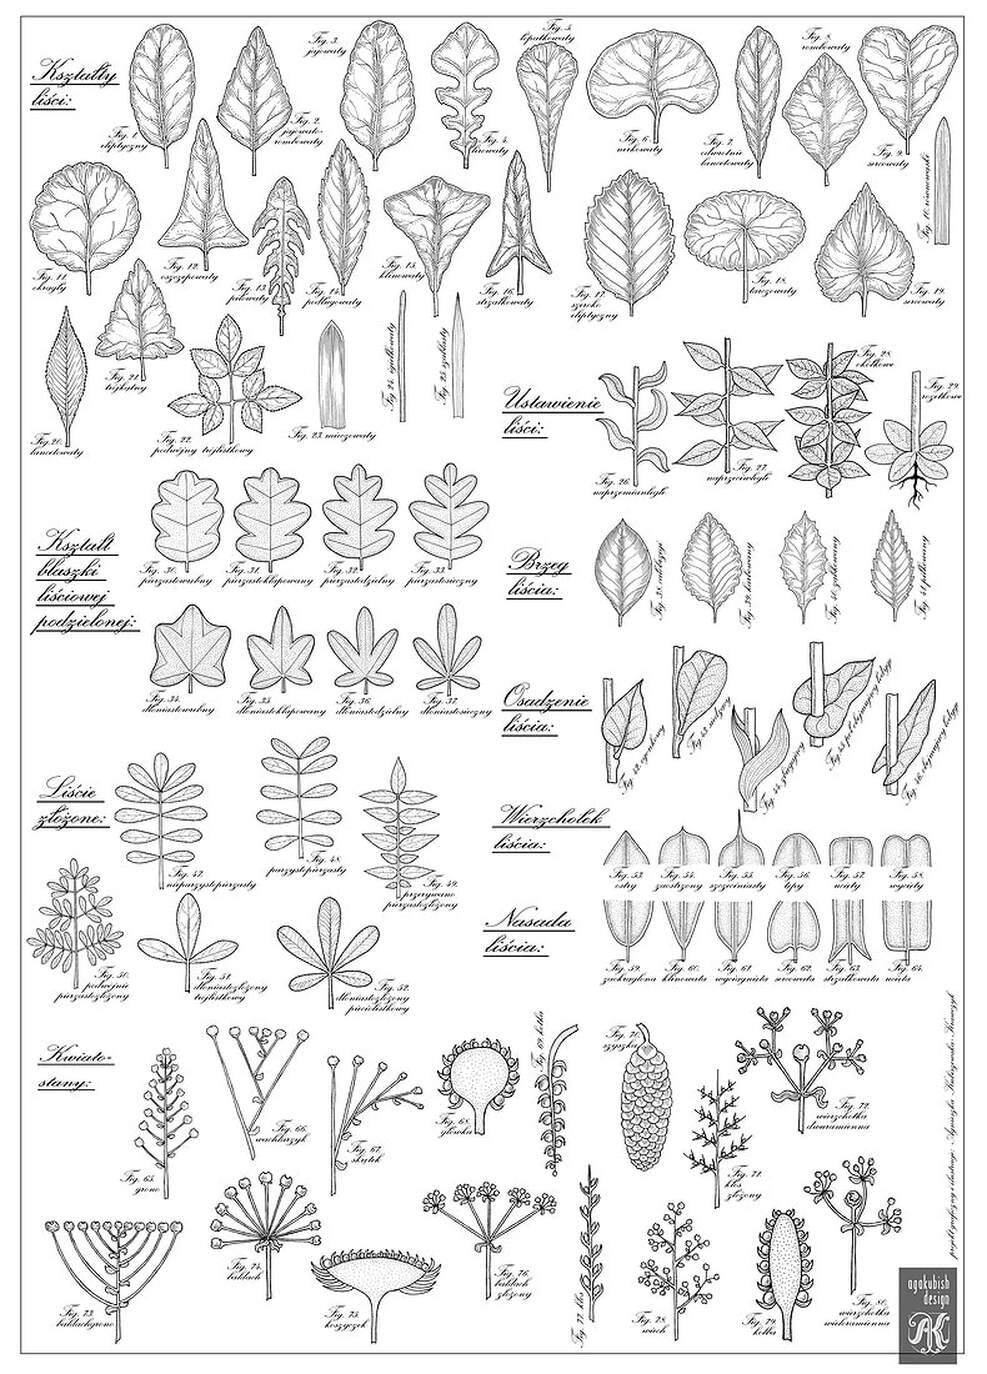 Plansza z 60 rycinami botanicznymi: liście i kwiatostany.